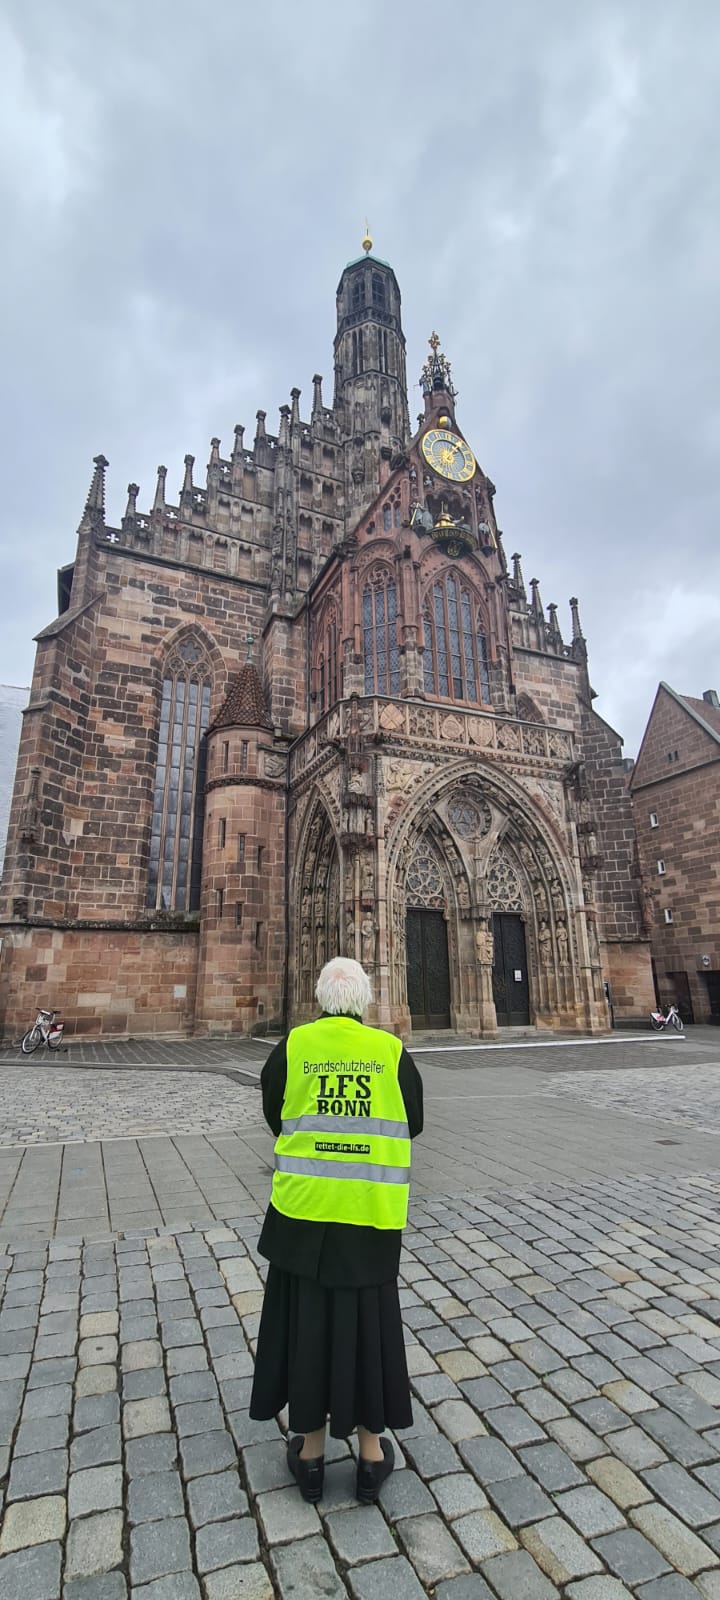 Person mit Sicherheitsweste mit Aufdruck "Brandschutzhelfer LFS Bonn" vor der Liebfrauenkirche in Nürnberg.